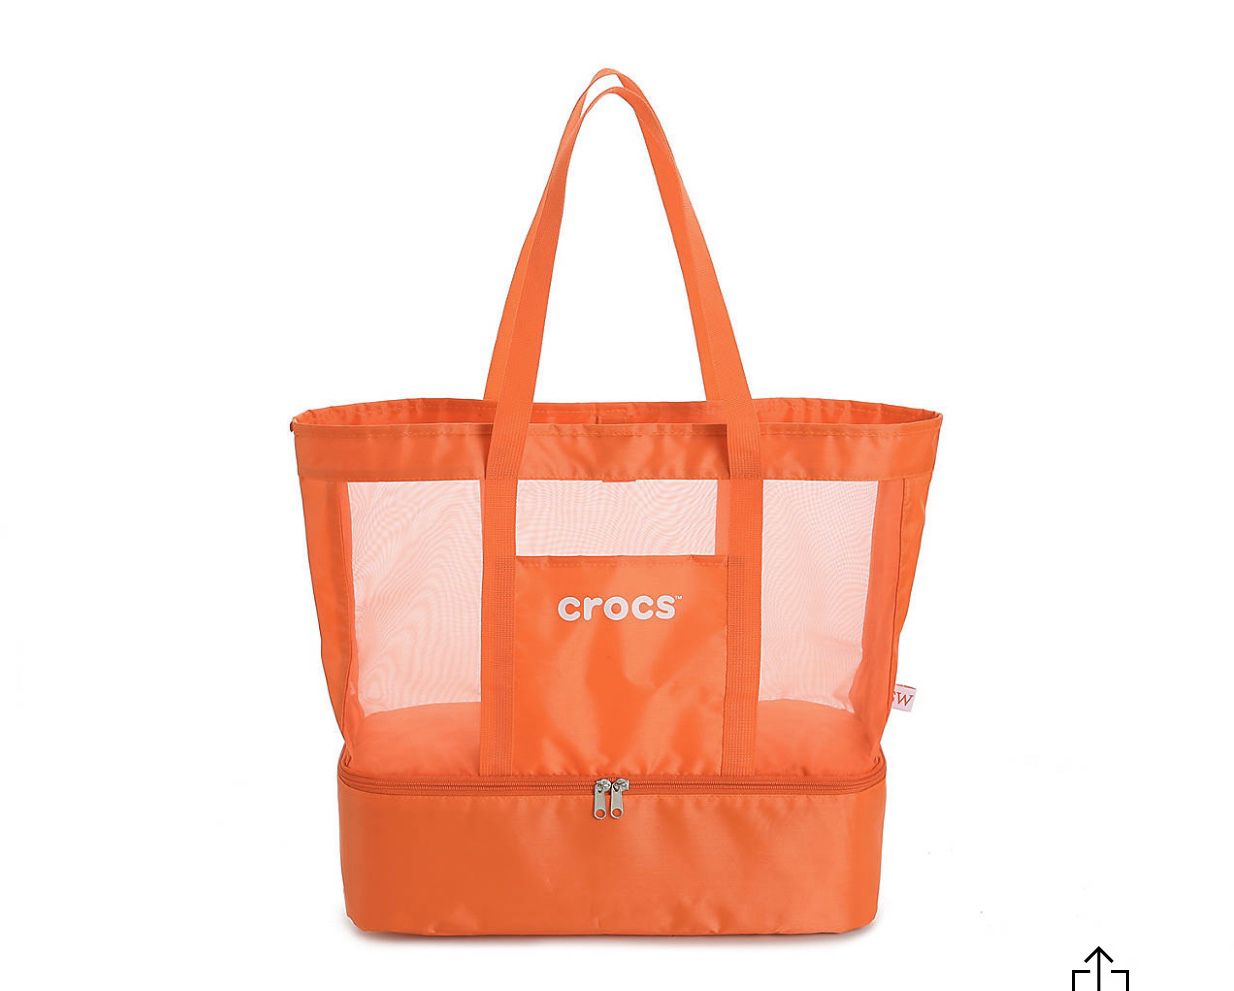 CROCS Beach Tote / Bag (new!)